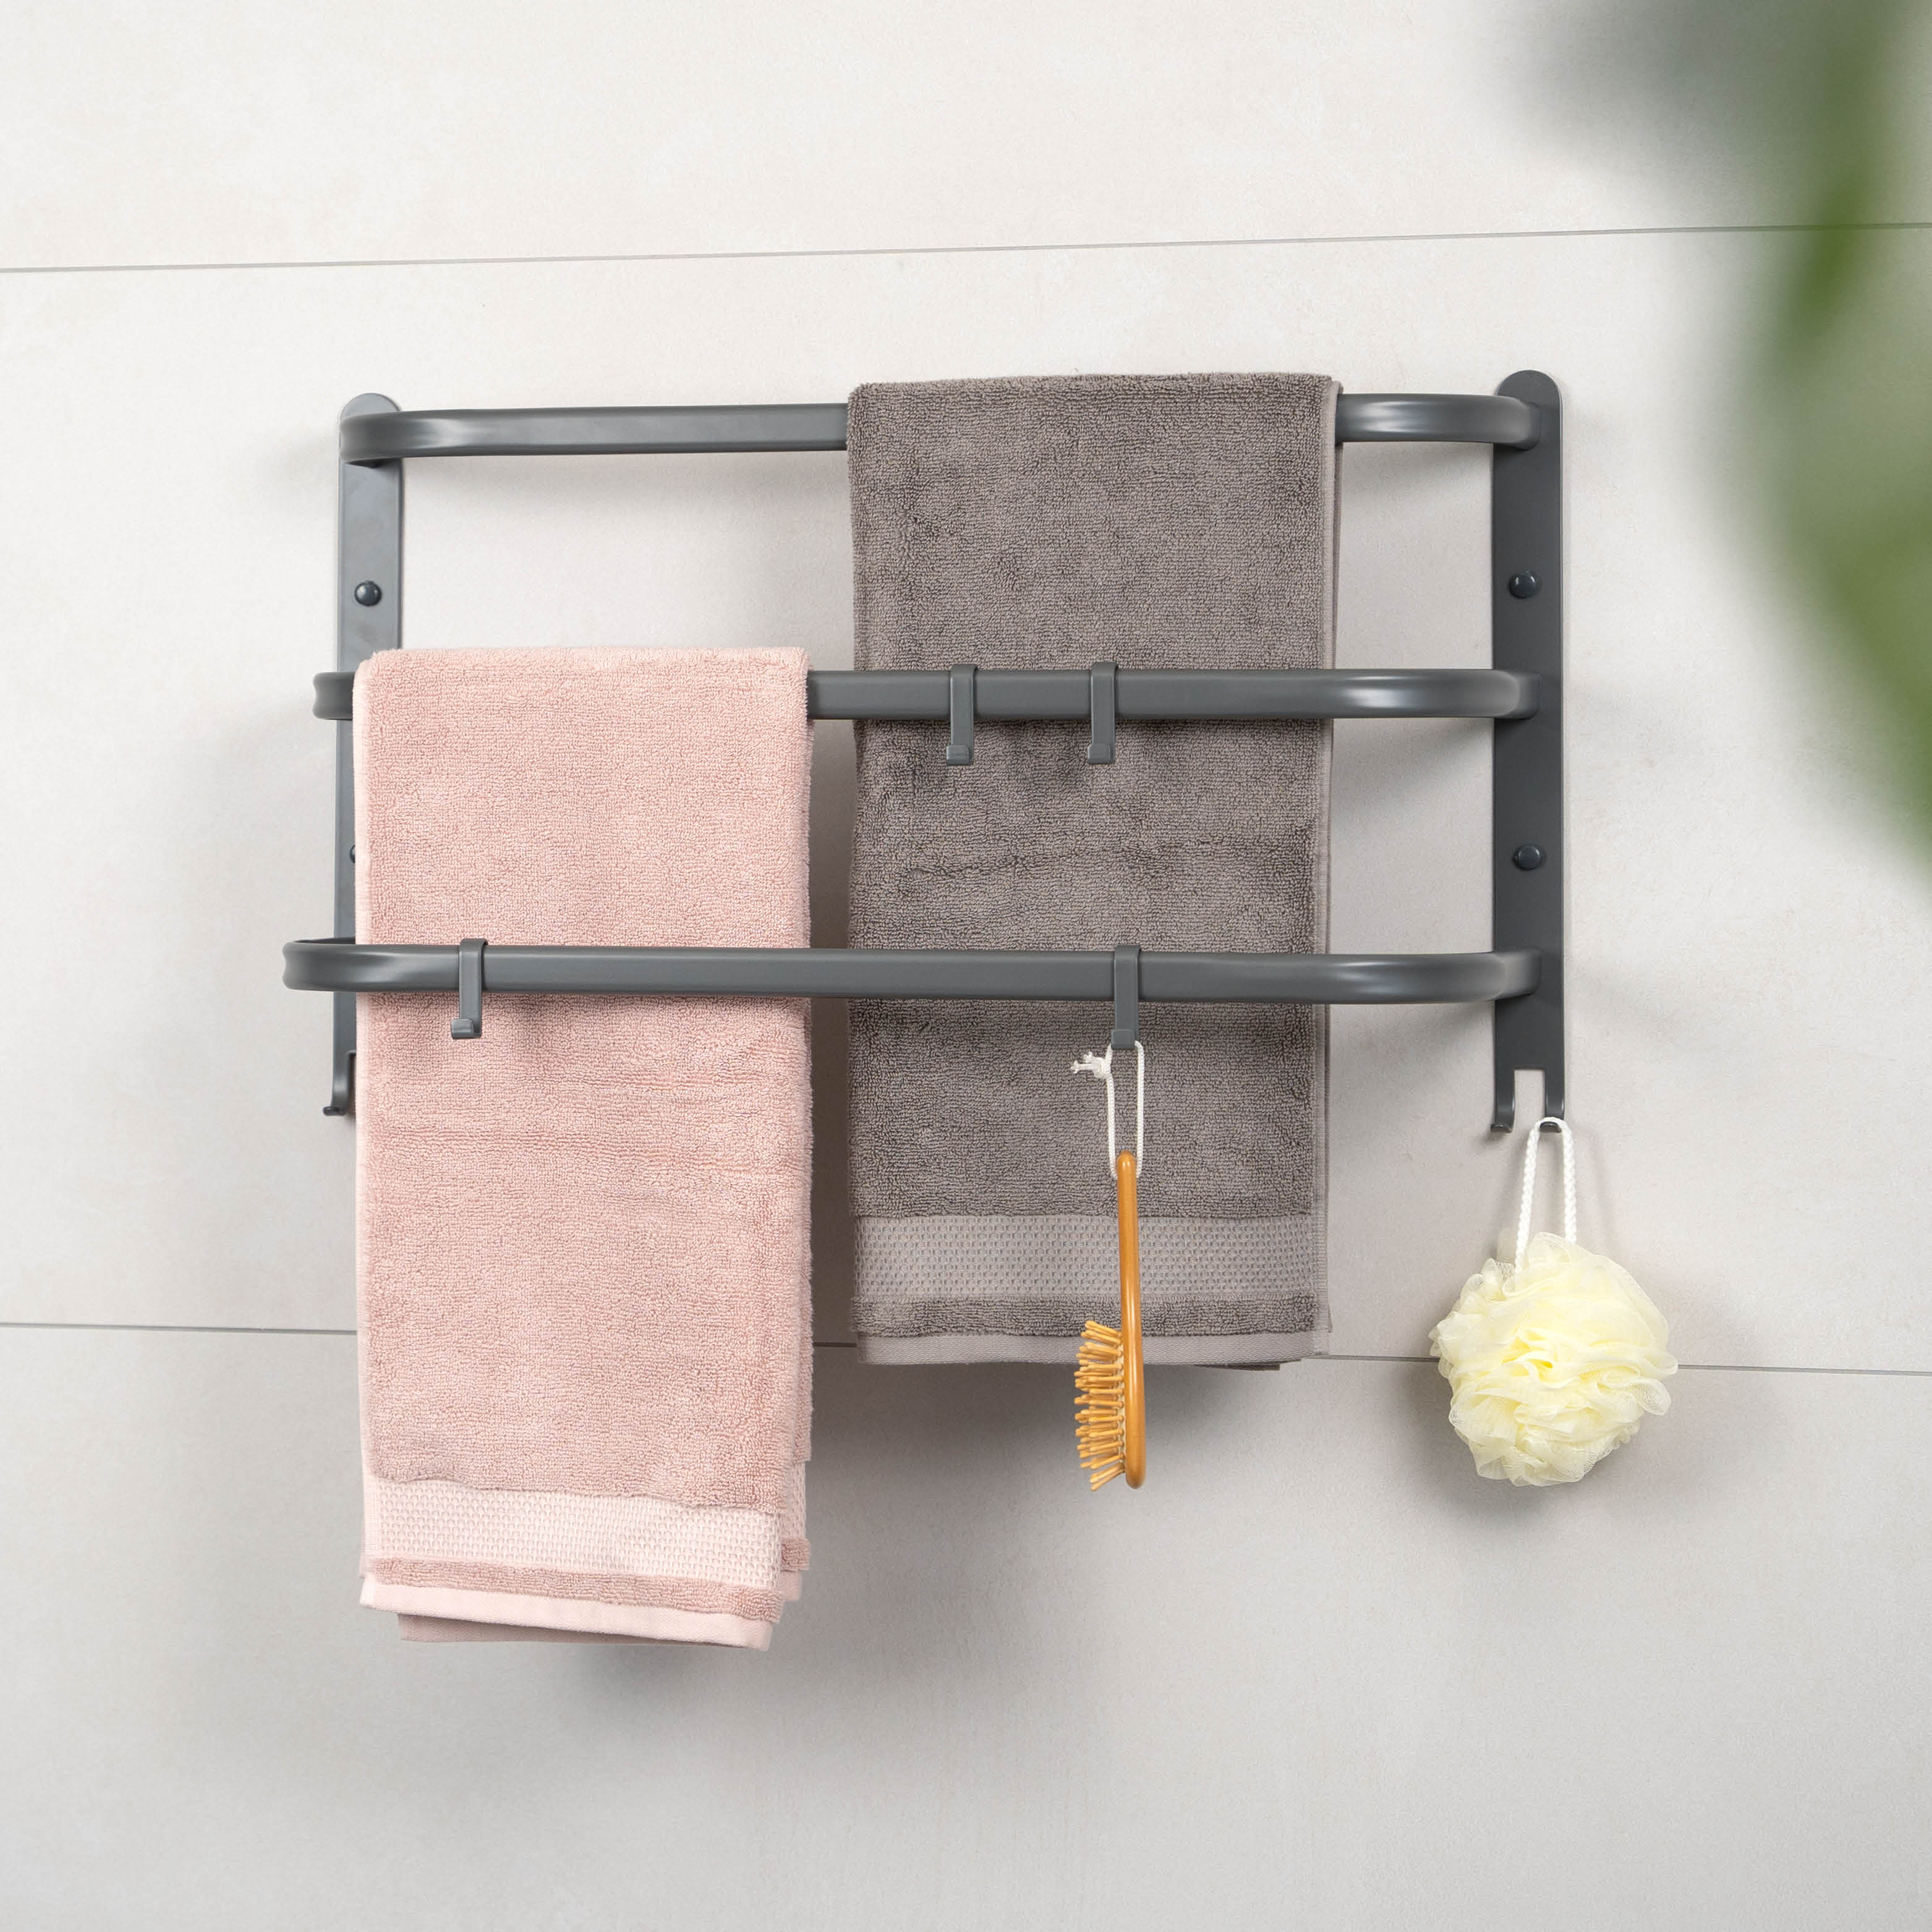 bremermann Wand-Handtuchhalter, 3 gestufte Ablagen, Handtuchstange zur Wandmontage, grau